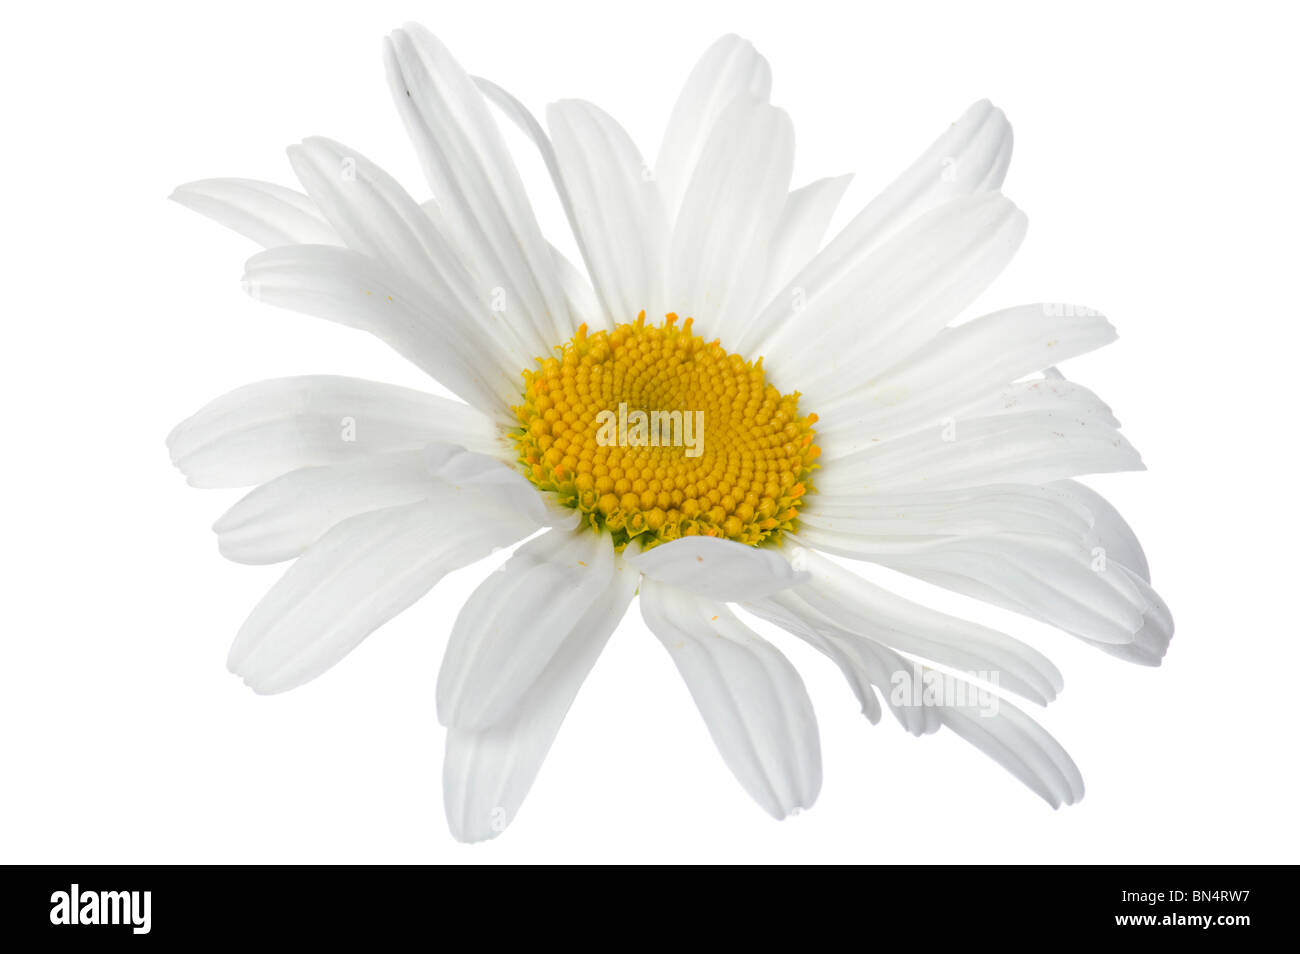 Objekt auf weiß - Blumen Kamille hautnah Stockfoto